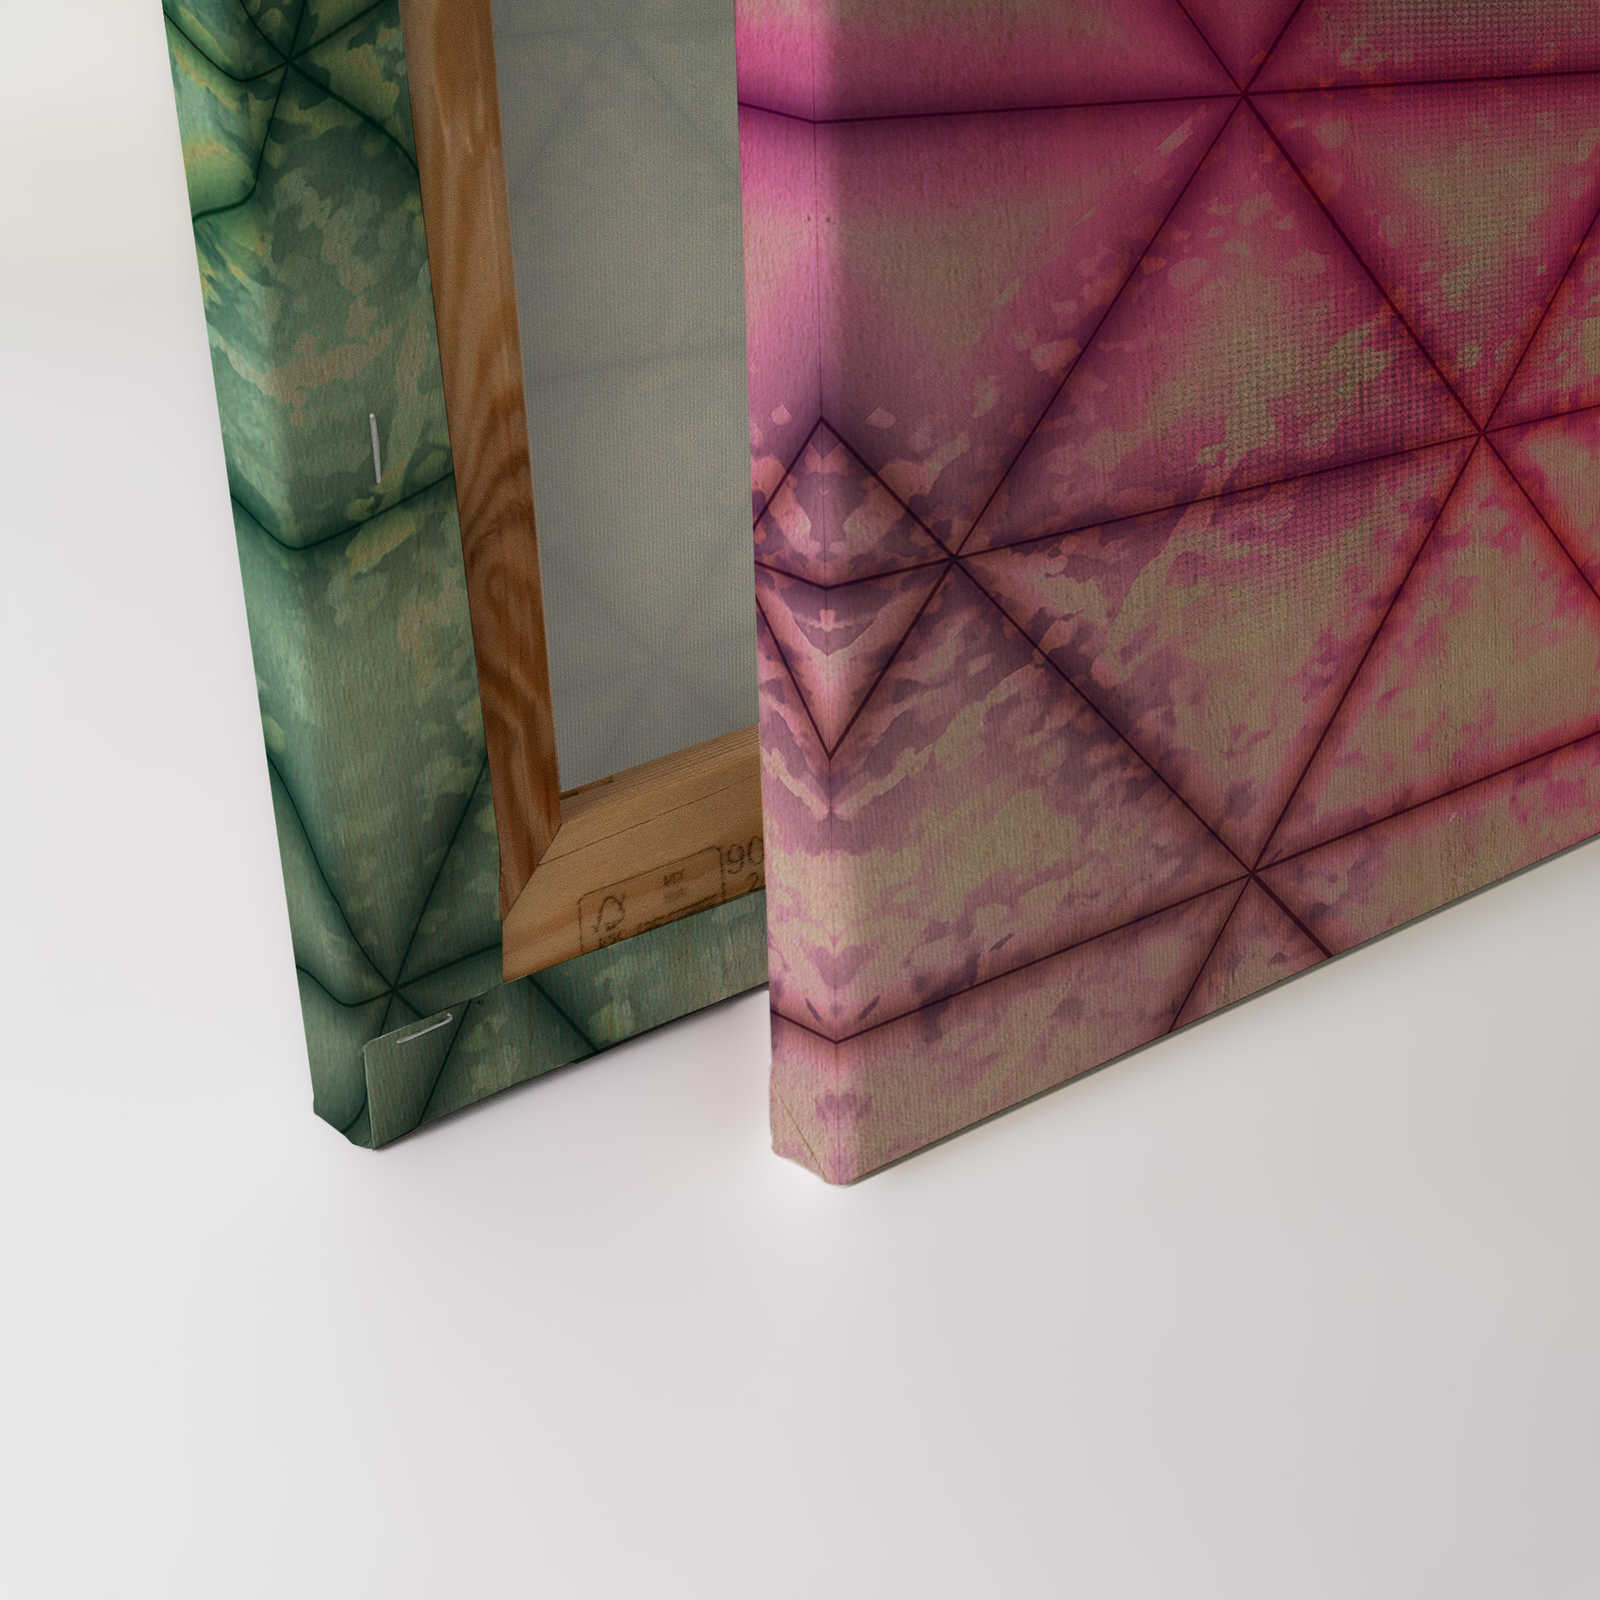             Tableau toile motif triangulaire géométrique imitation bois | vert, rose - 0,90 m x 0,60 m
        